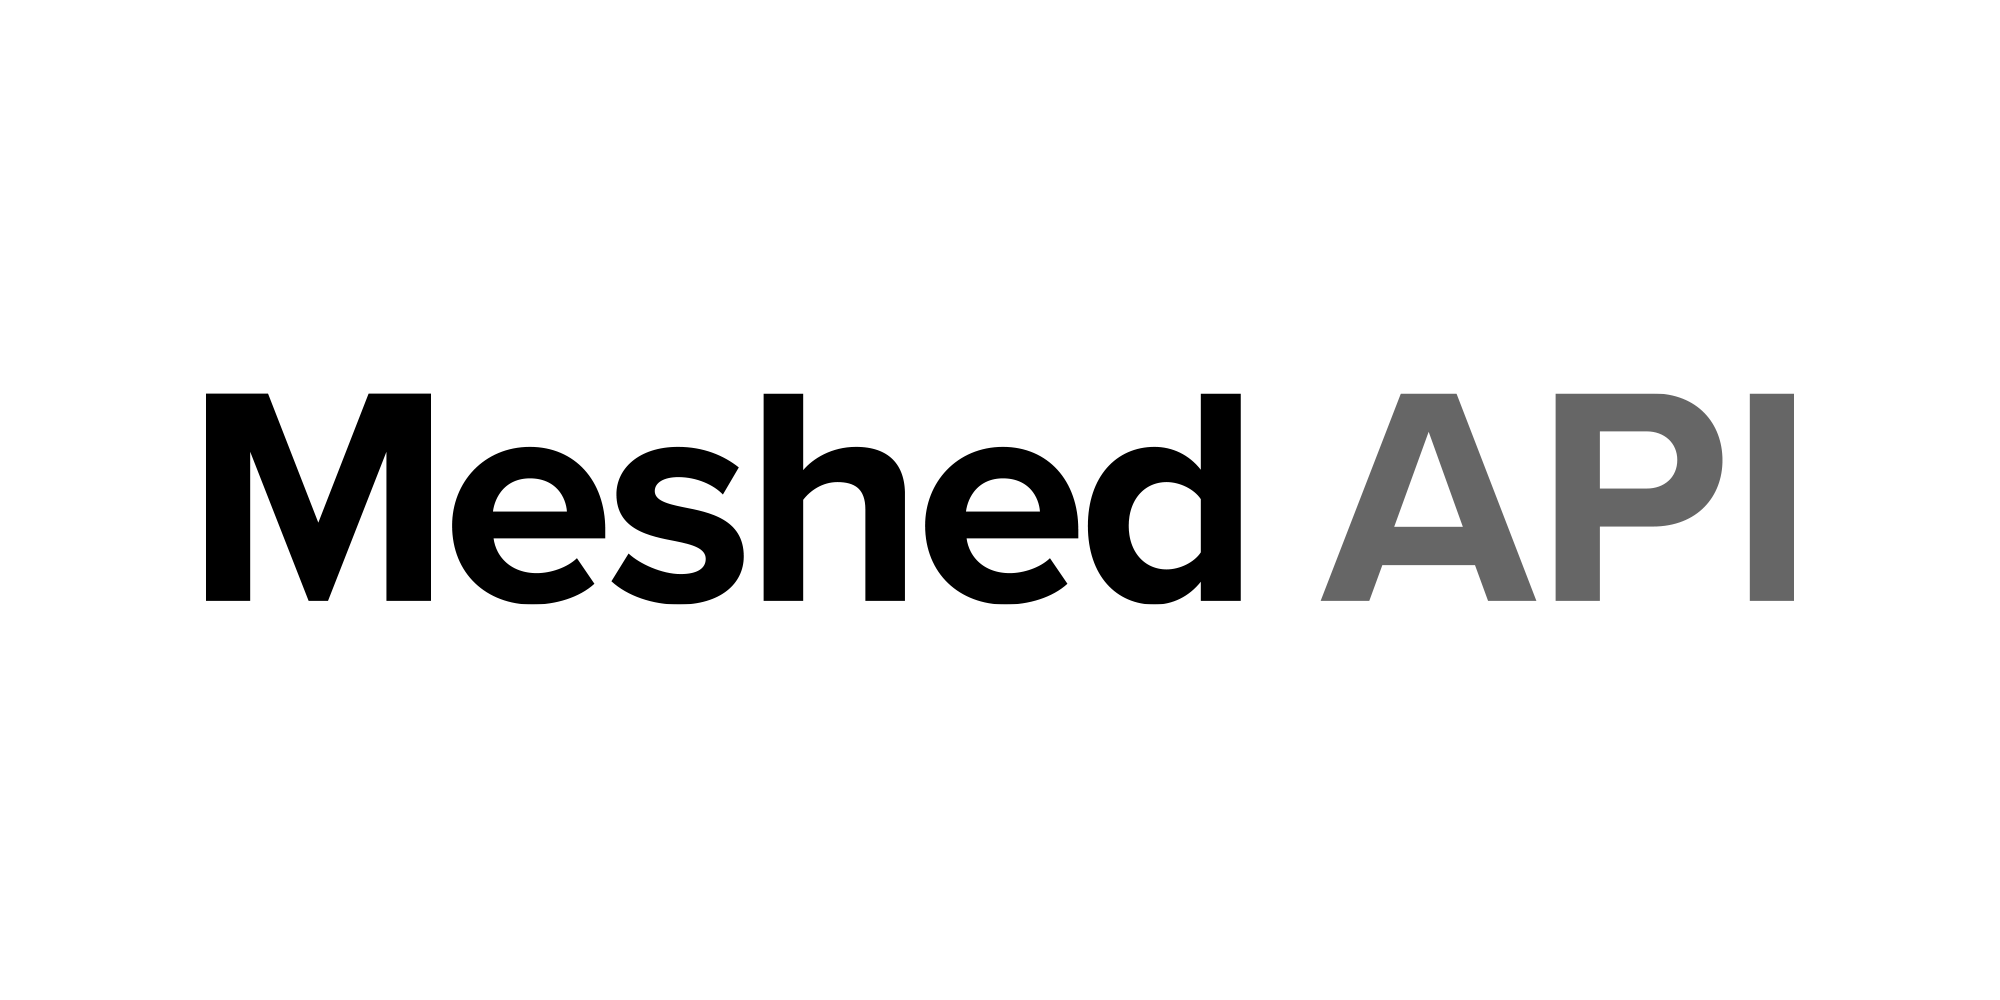 Meshed API logo